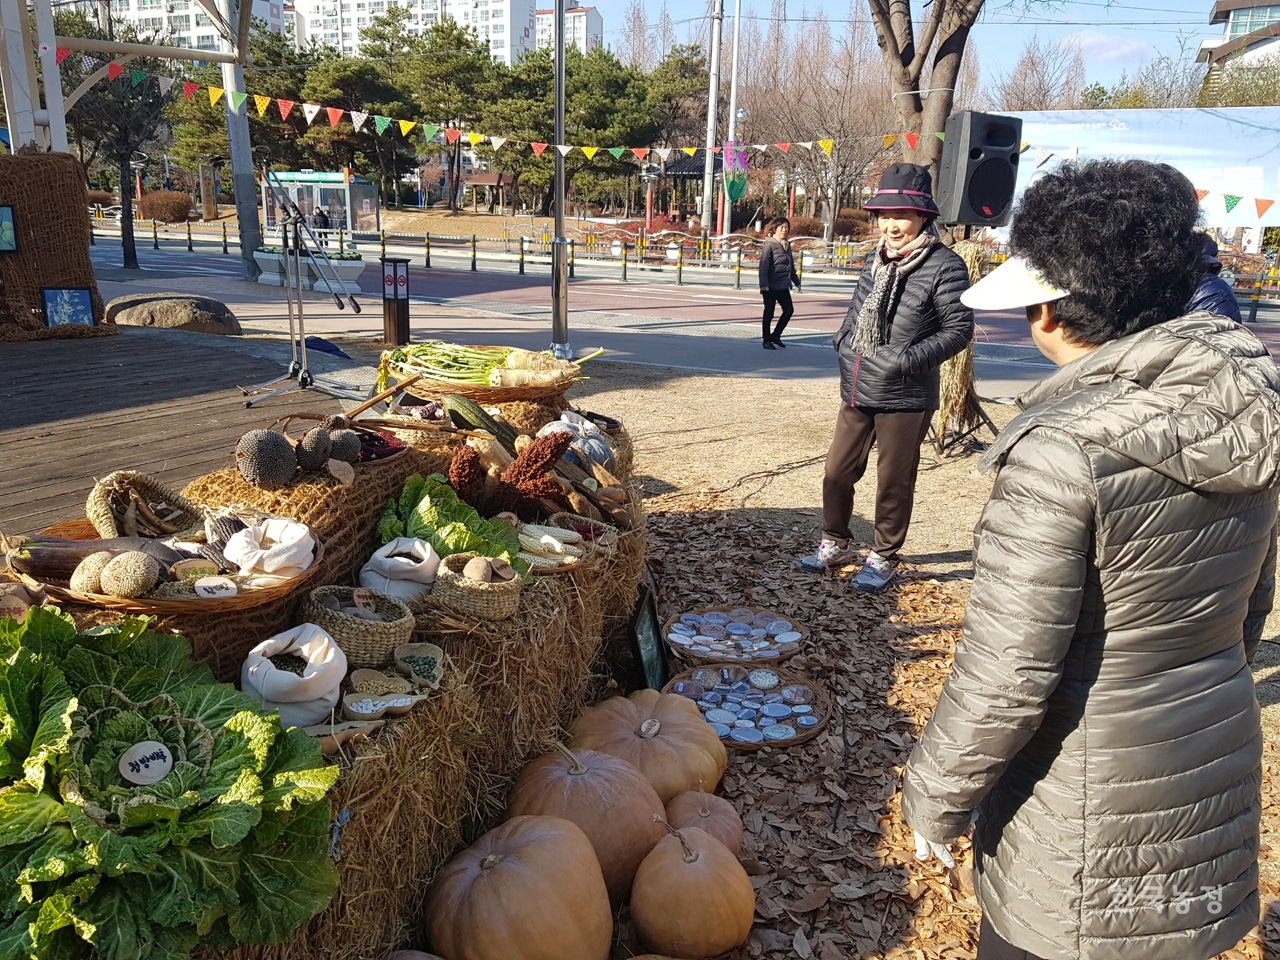 행사장에 진열된 토종 농산물이 사람들의 관심을 모았다.